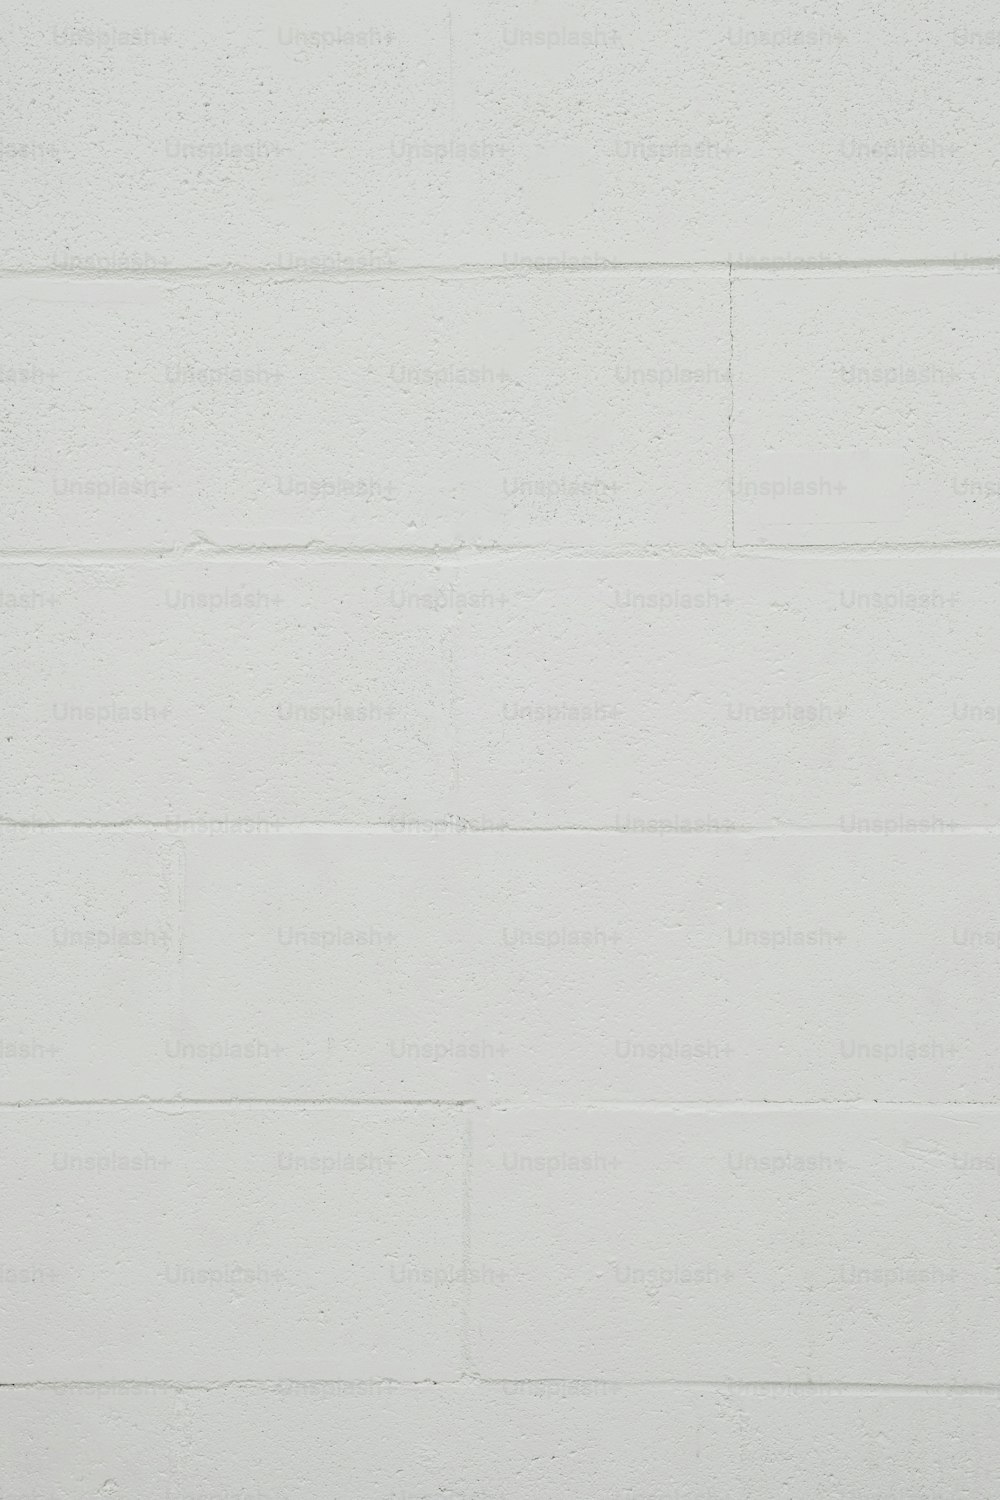 un mur de briques blanches avec une horloge en noir et blanc dessus